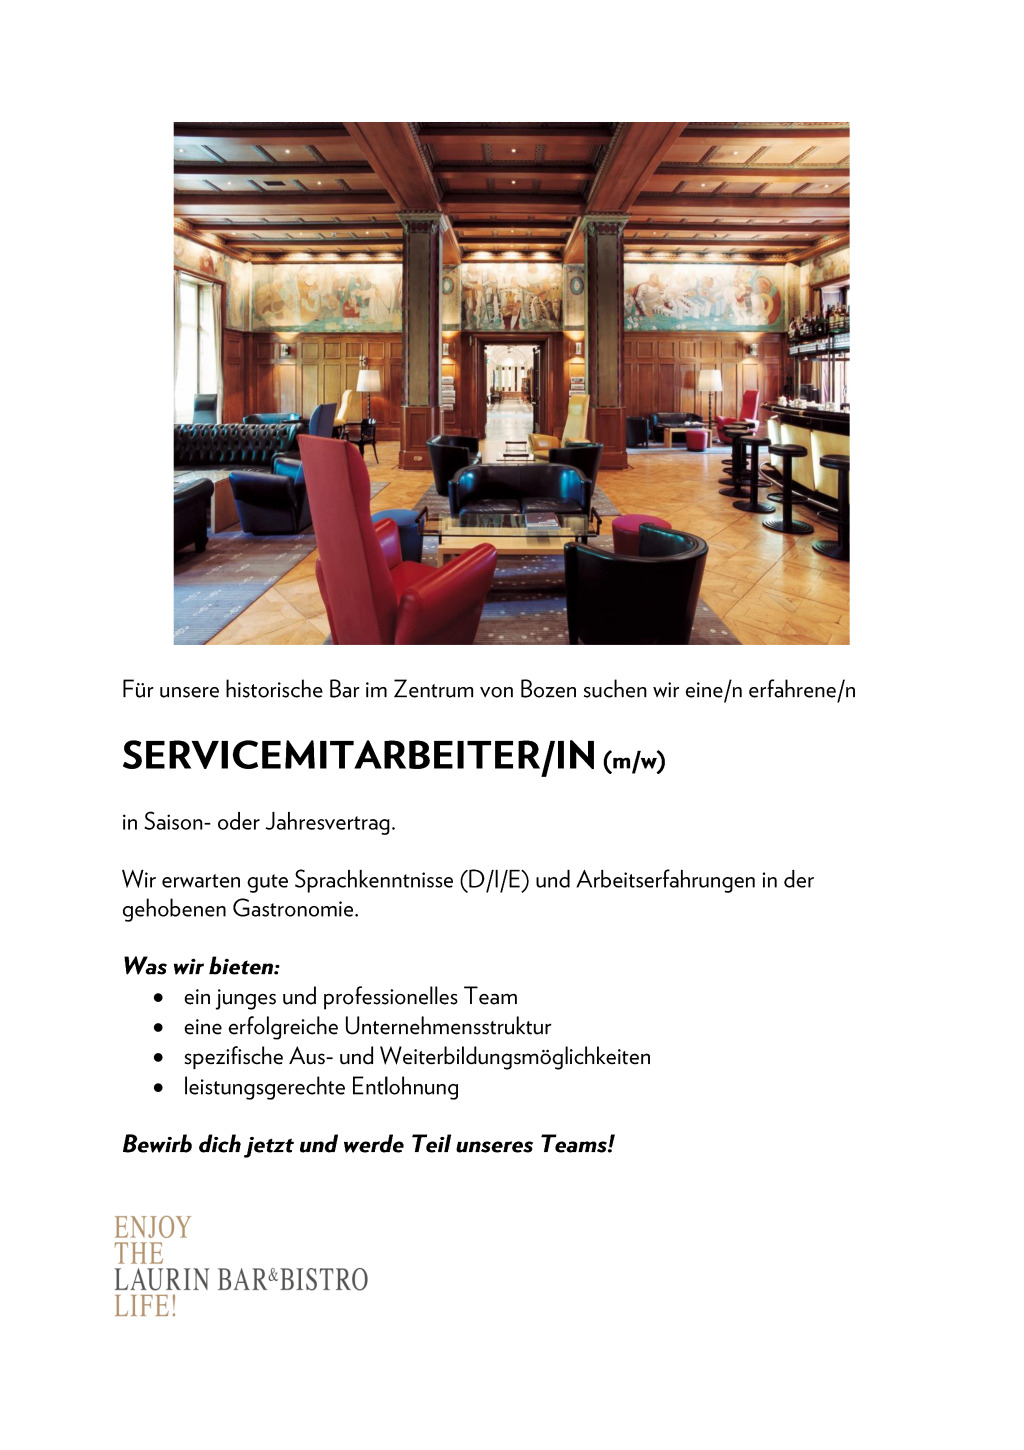 Servicemitarbeiter/in in der Laurin Bar & Bistro